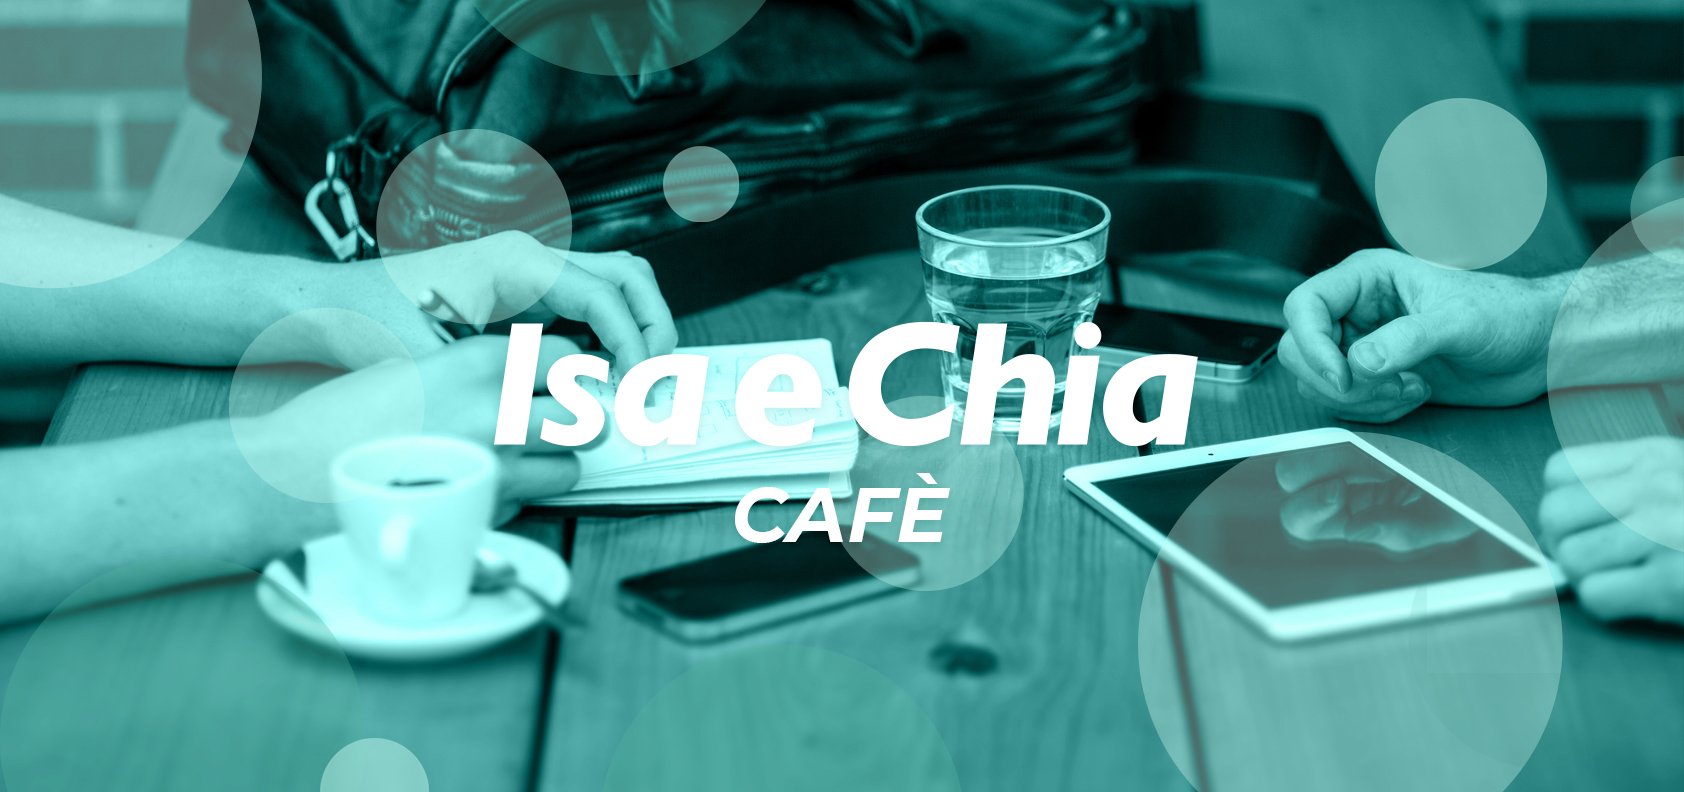 Isa e Chia Cafè, l’angolo delle chiacchiere in libertà (12/06/22)